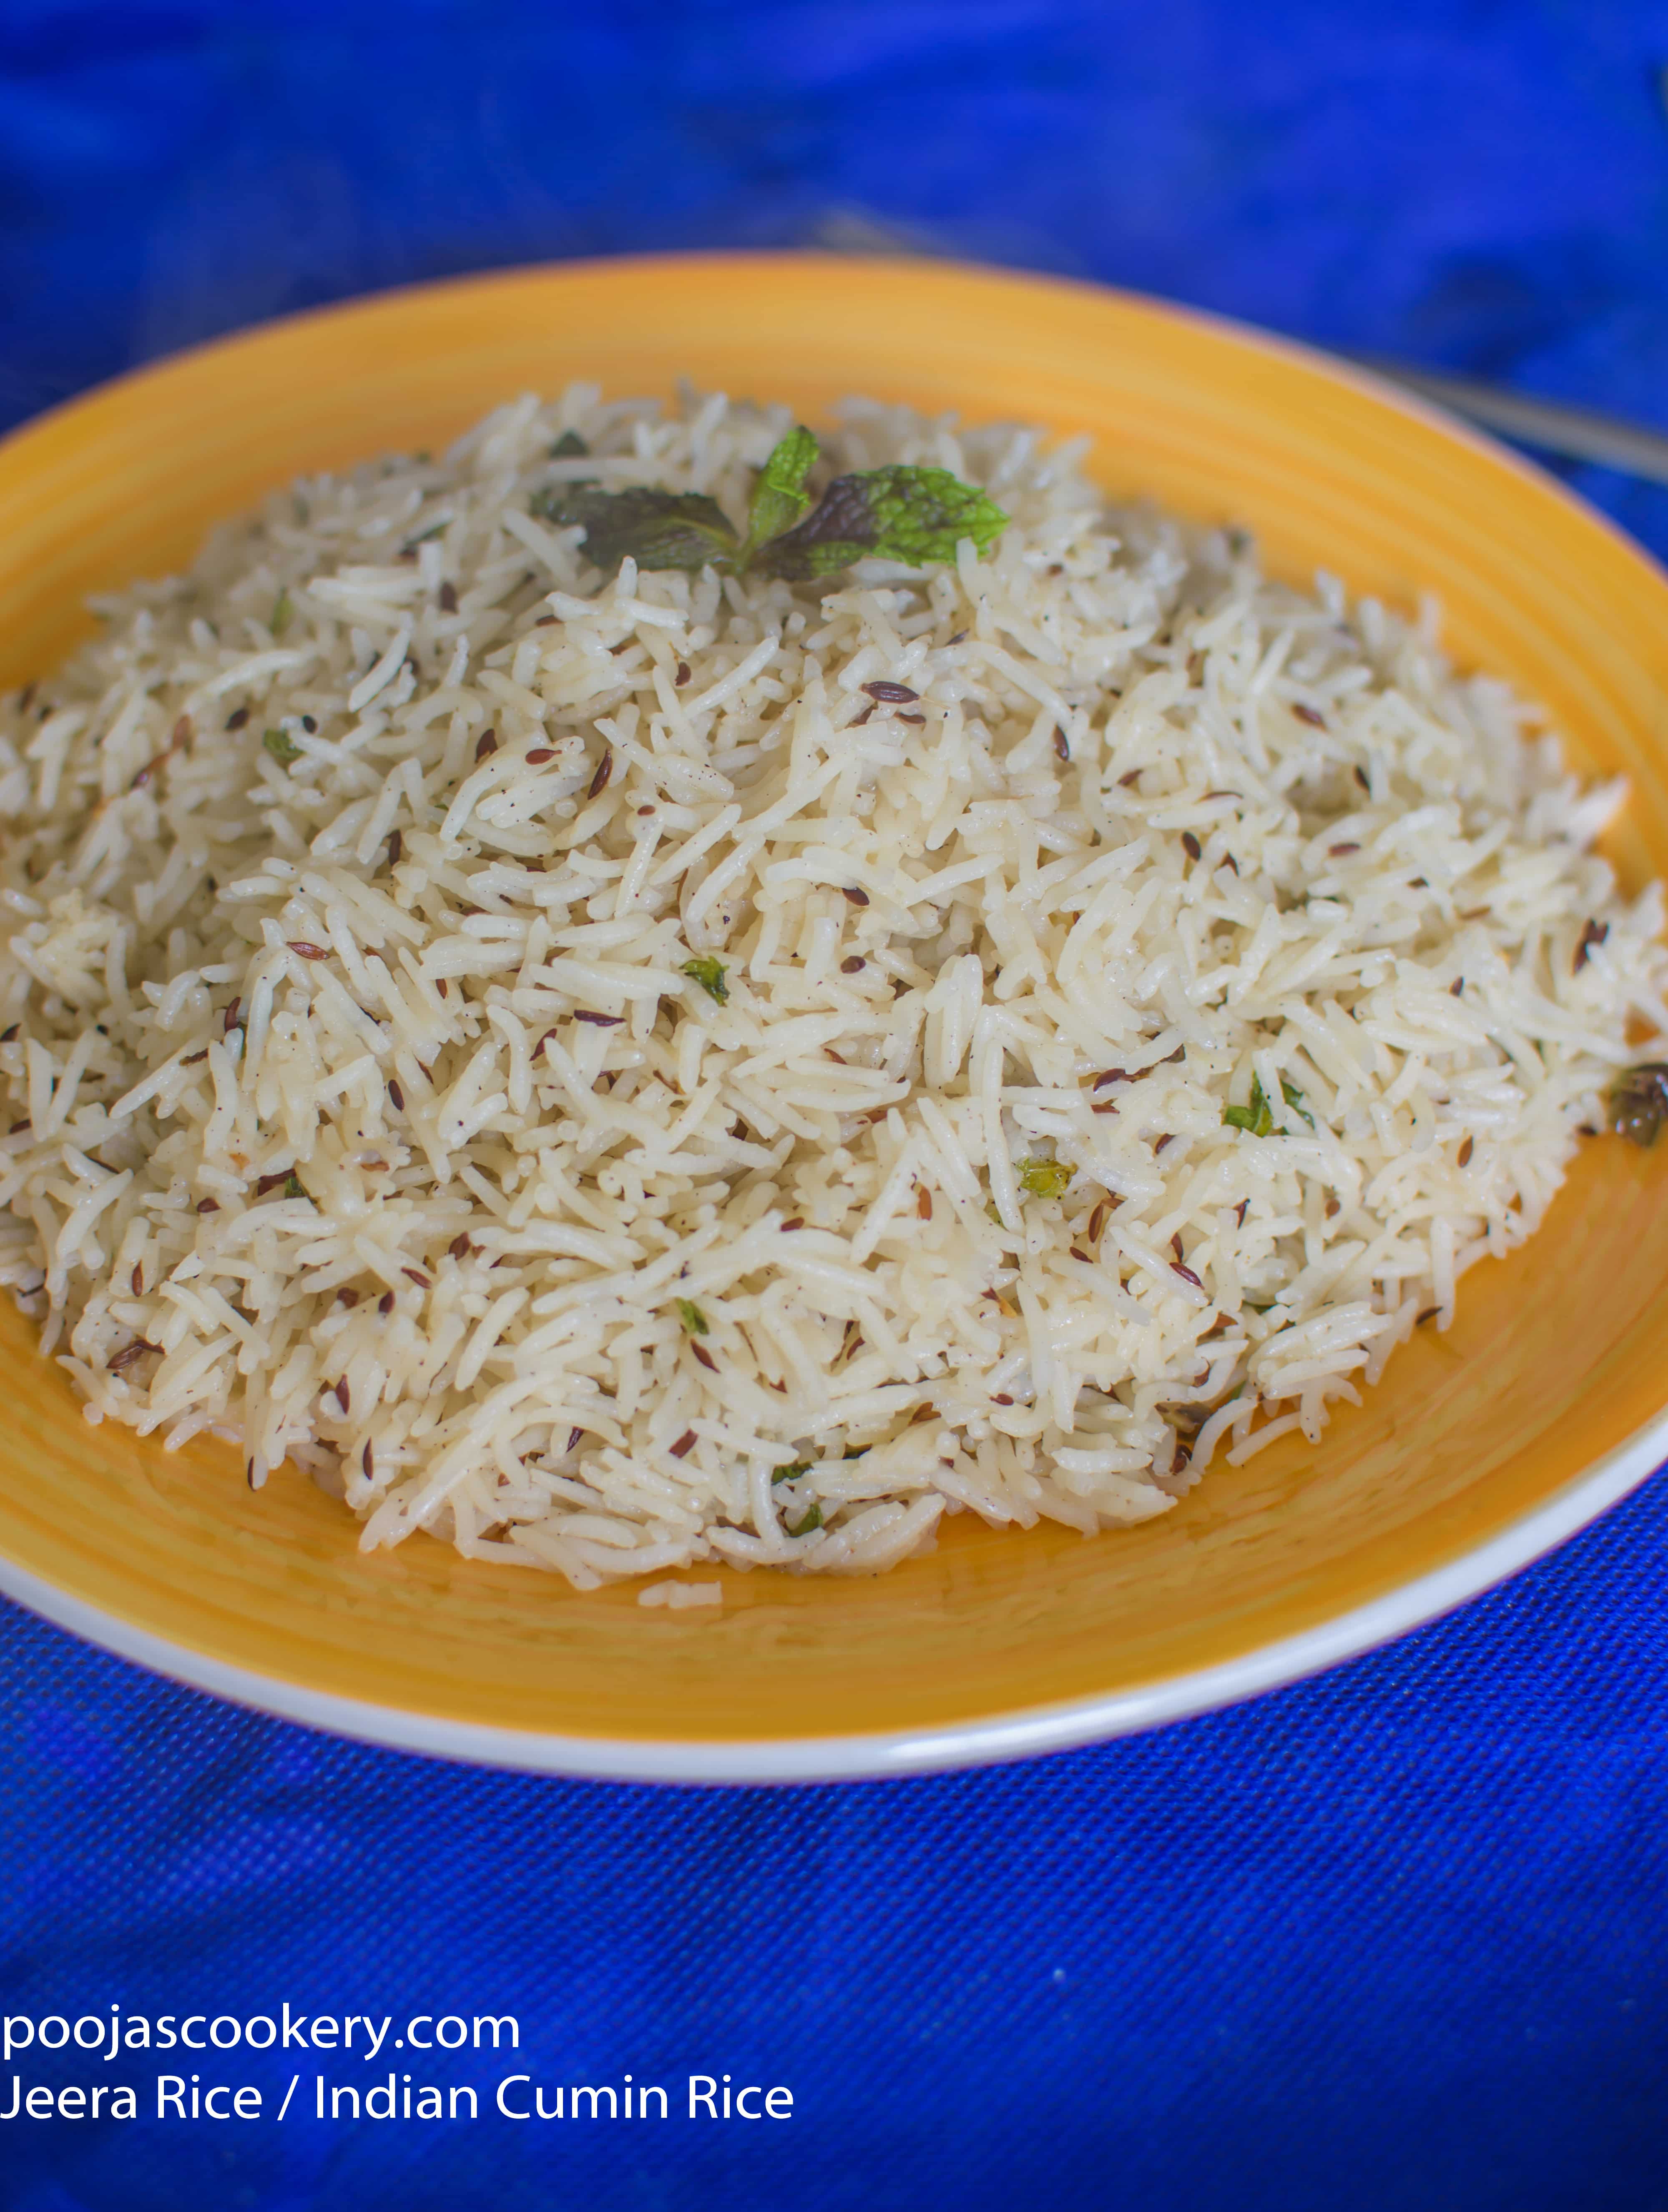 Jeera Rice / Indian Cumin Rice Recip - Pooja's Cookery